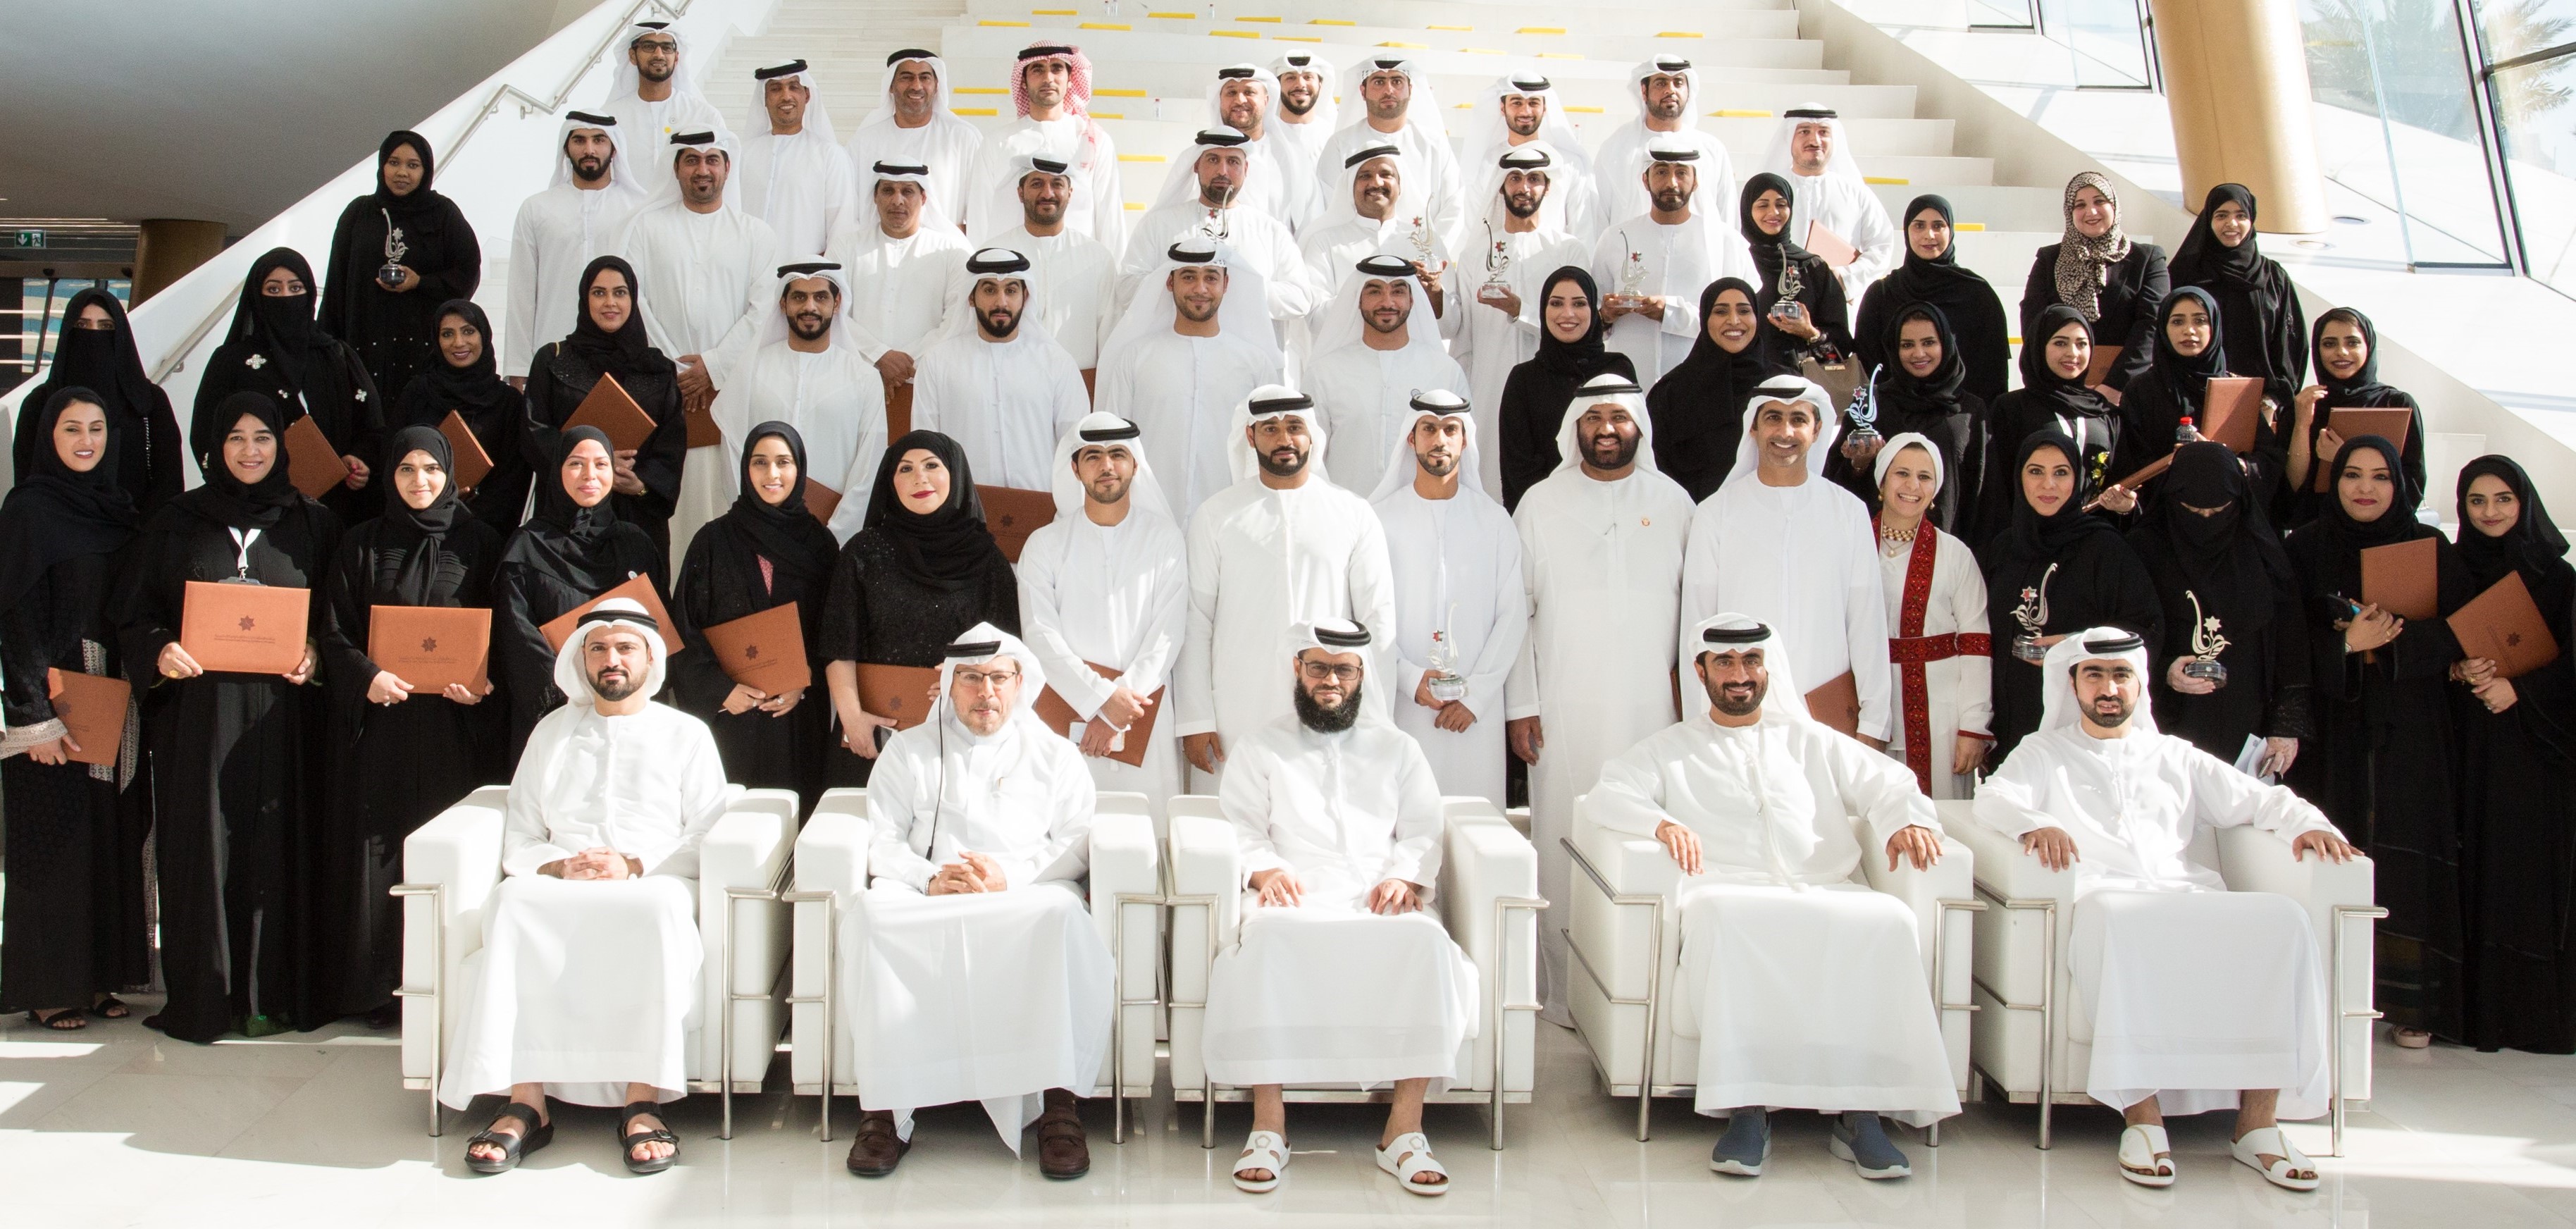 برنامج الإمارات للخدمة الحكومية المتميزة يدرب 7 آلاف موظف سعادة متعاملين في 2019